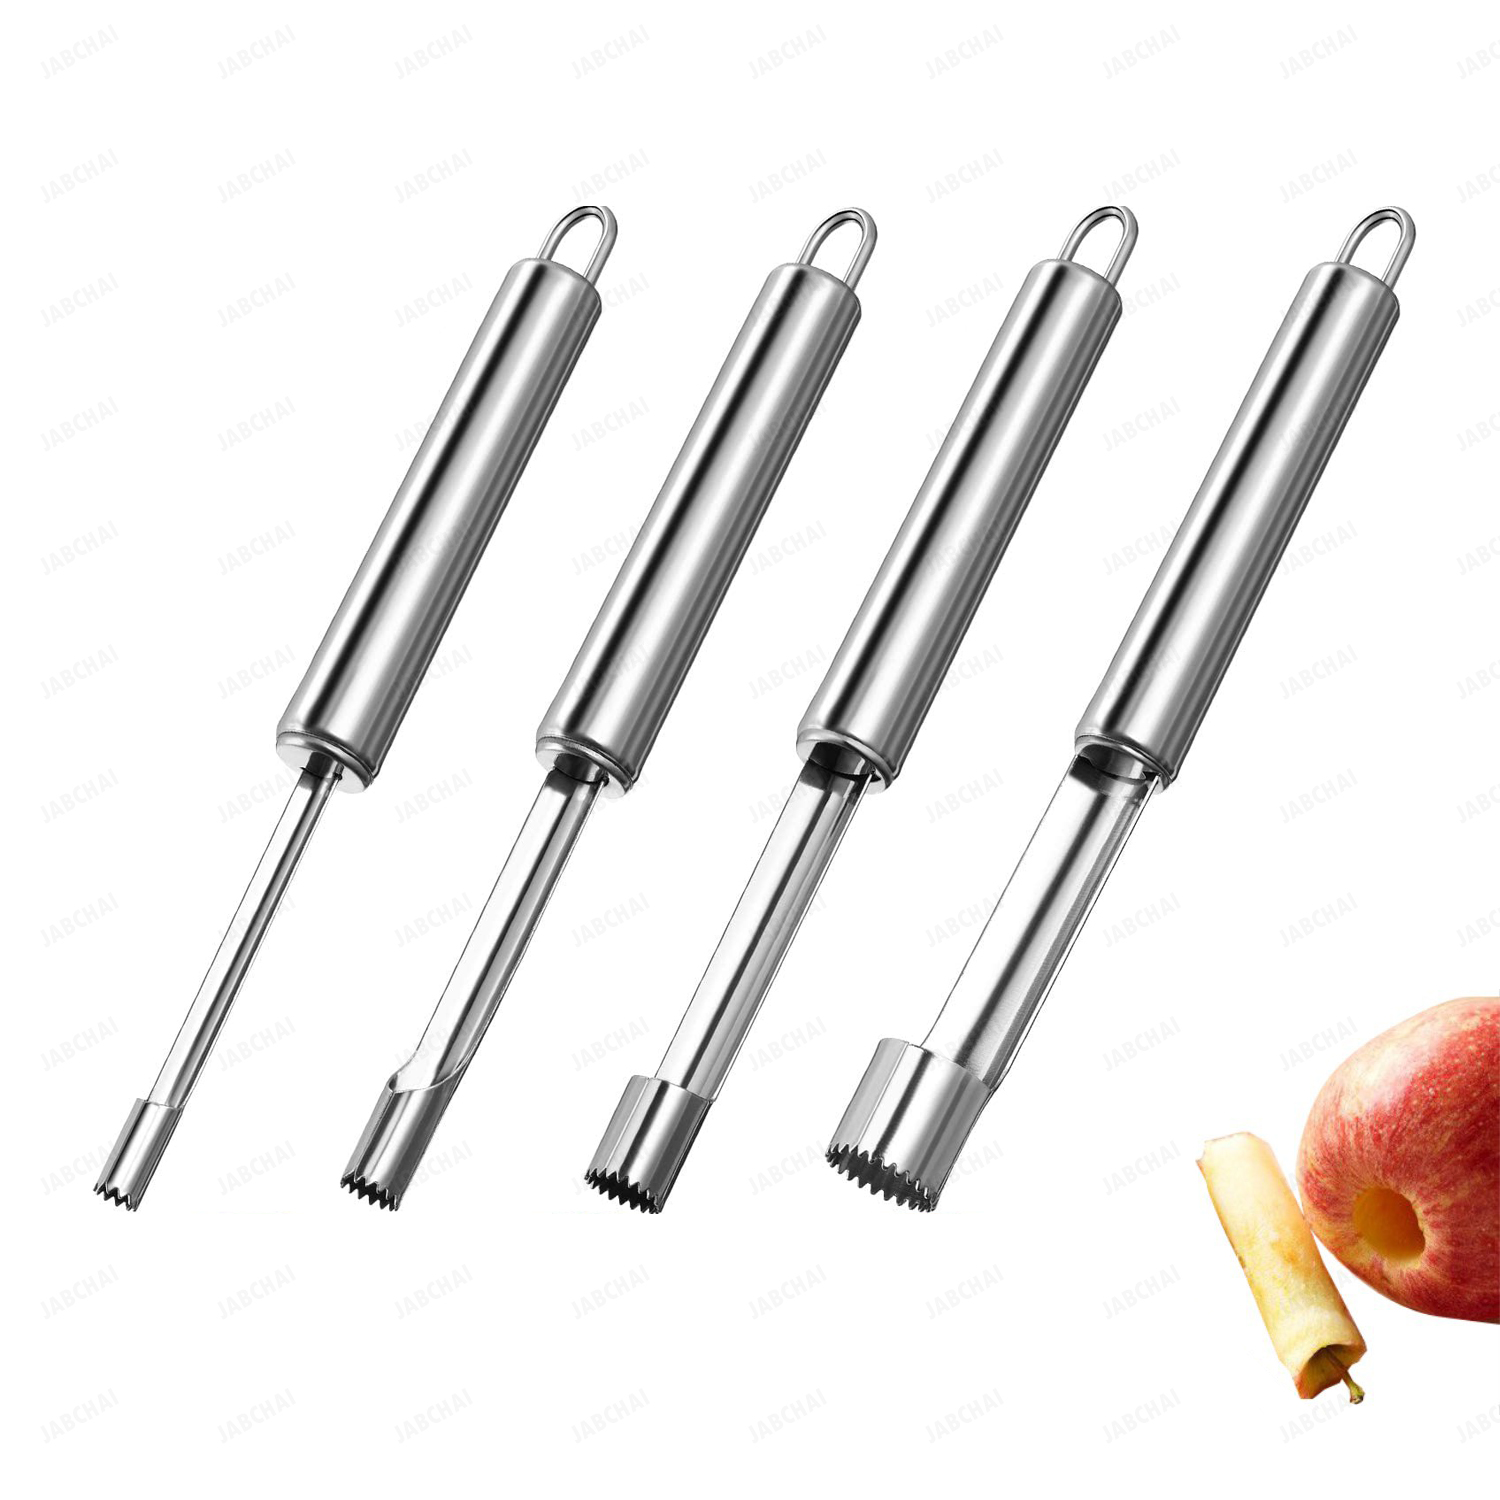 1ชุด(4ชิ้น) อุปกรณ์ปลอกเมล็ดผลไม้ เครื่องมือห้องครัว ปลอกแแอปเปิ้ลเชอร์รี่ และผลไม้อีกหลายชนิดสะดวกใช้งานประยัดเวลา